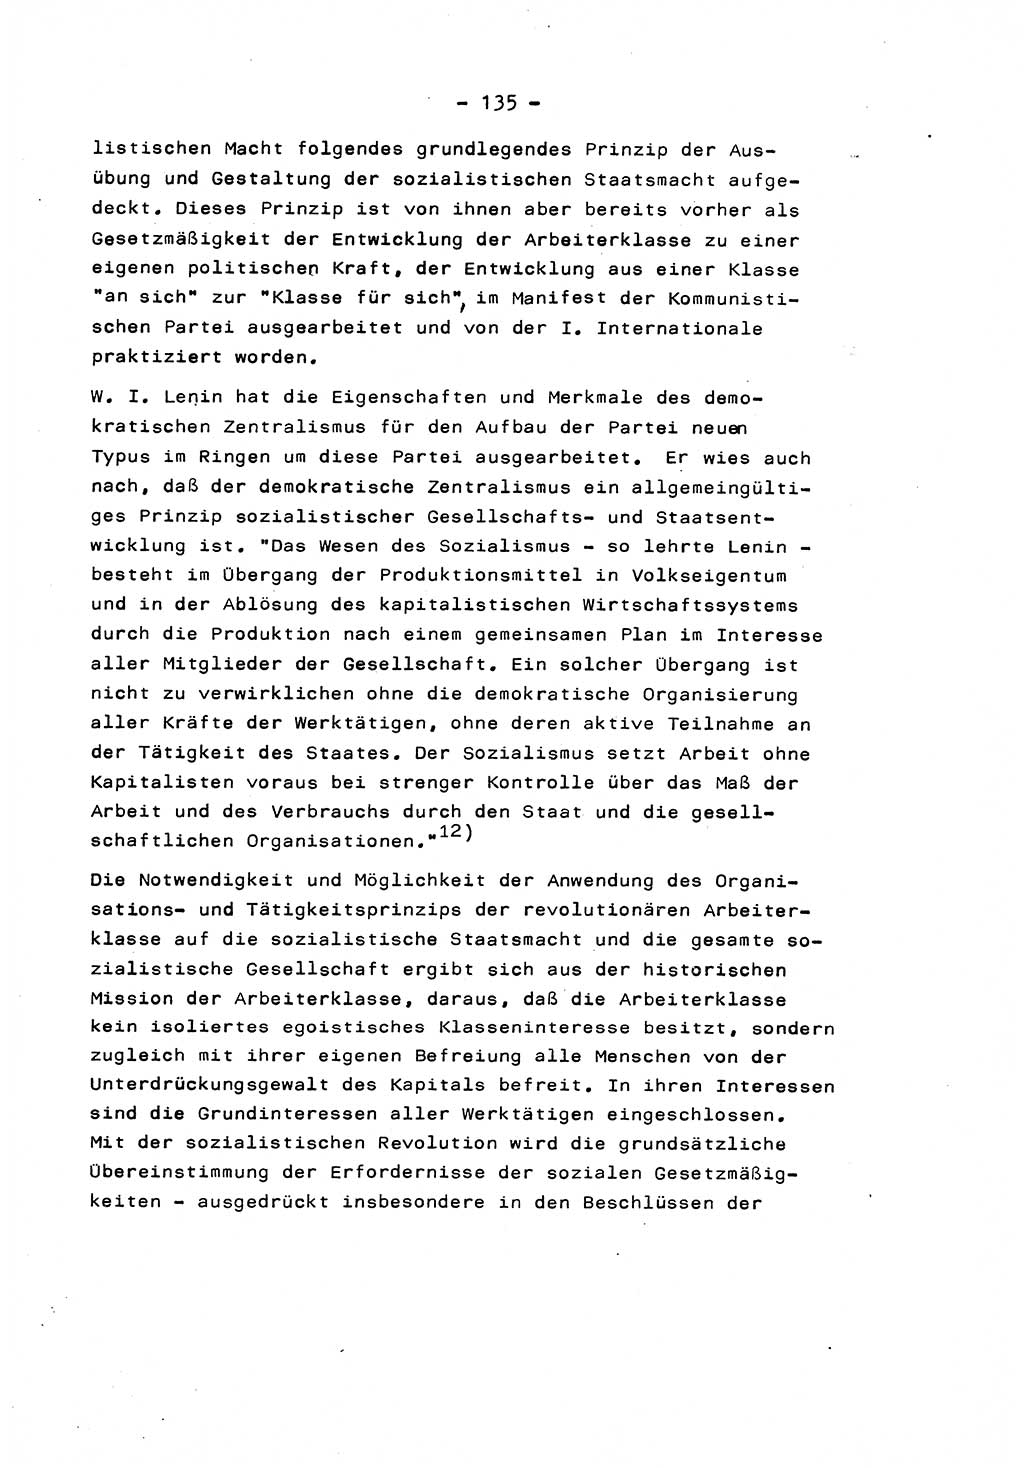 Marxistisch-leninistische Staats- und Rechtstheorie [Deutsche Demokratische Republik (DDR)] 1975, Seite 135 (ML St.-R.-Th. DDR 1975, S. 135)